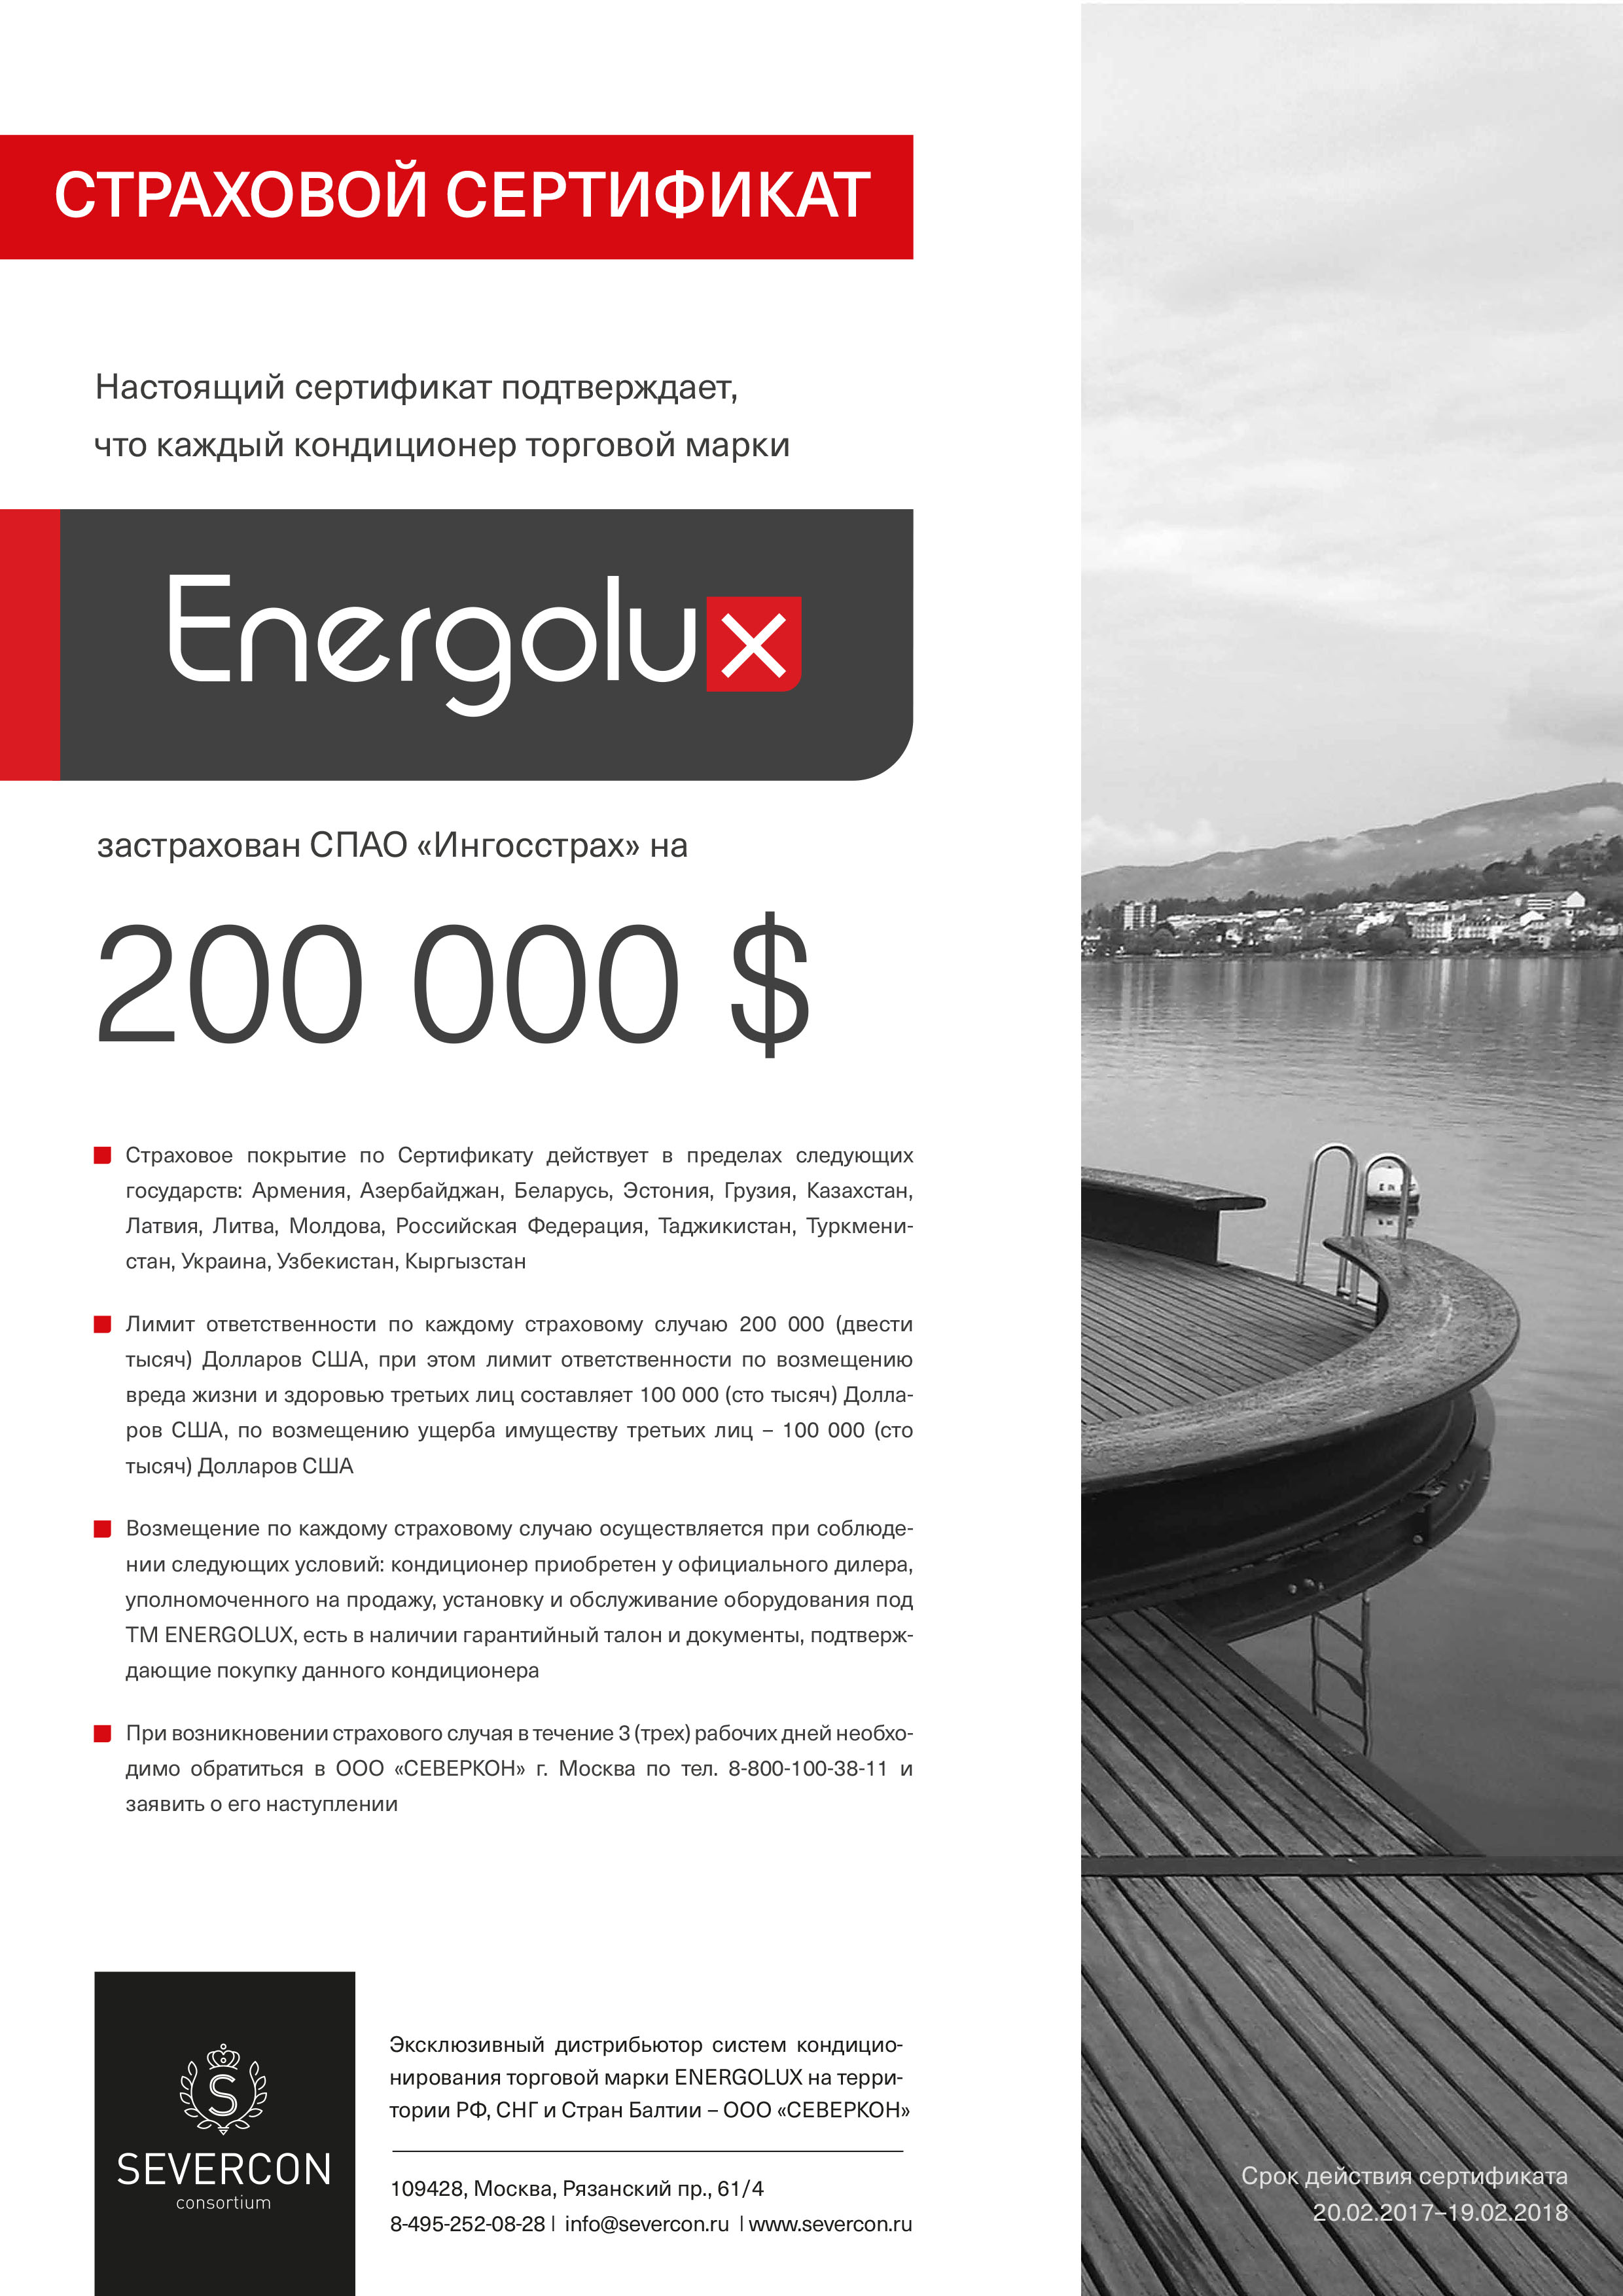 Каждый кондиционер Energolux застрахован СПАО «Ингосстрах» на 200 000$